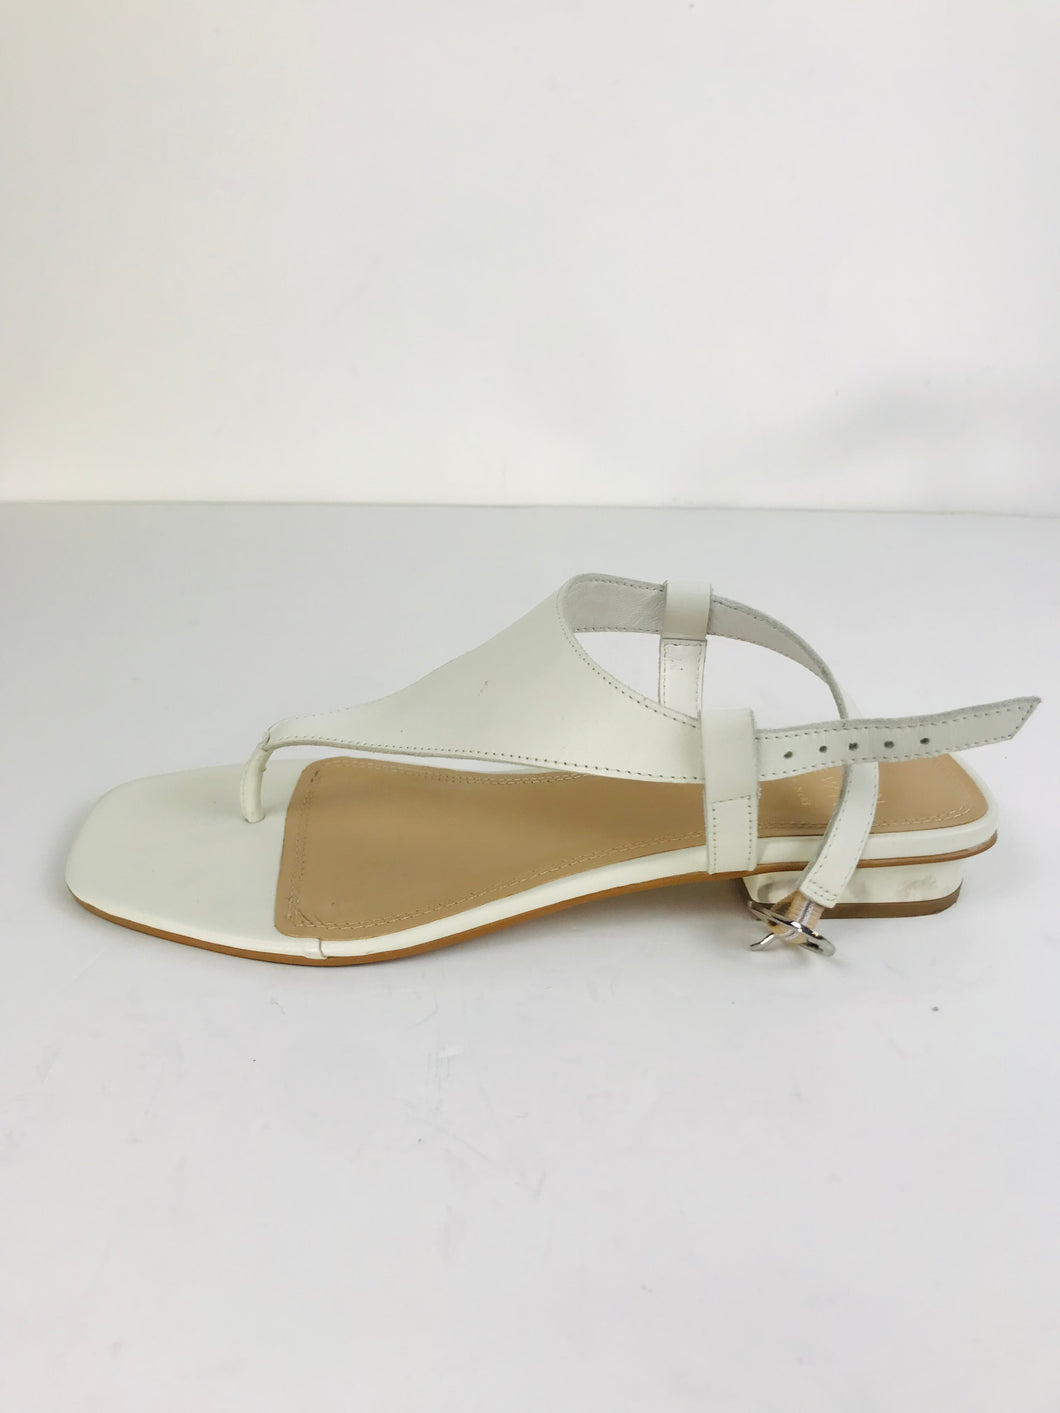 John Lewis Women's Low Heeled Sandals | 40 UK7 | White